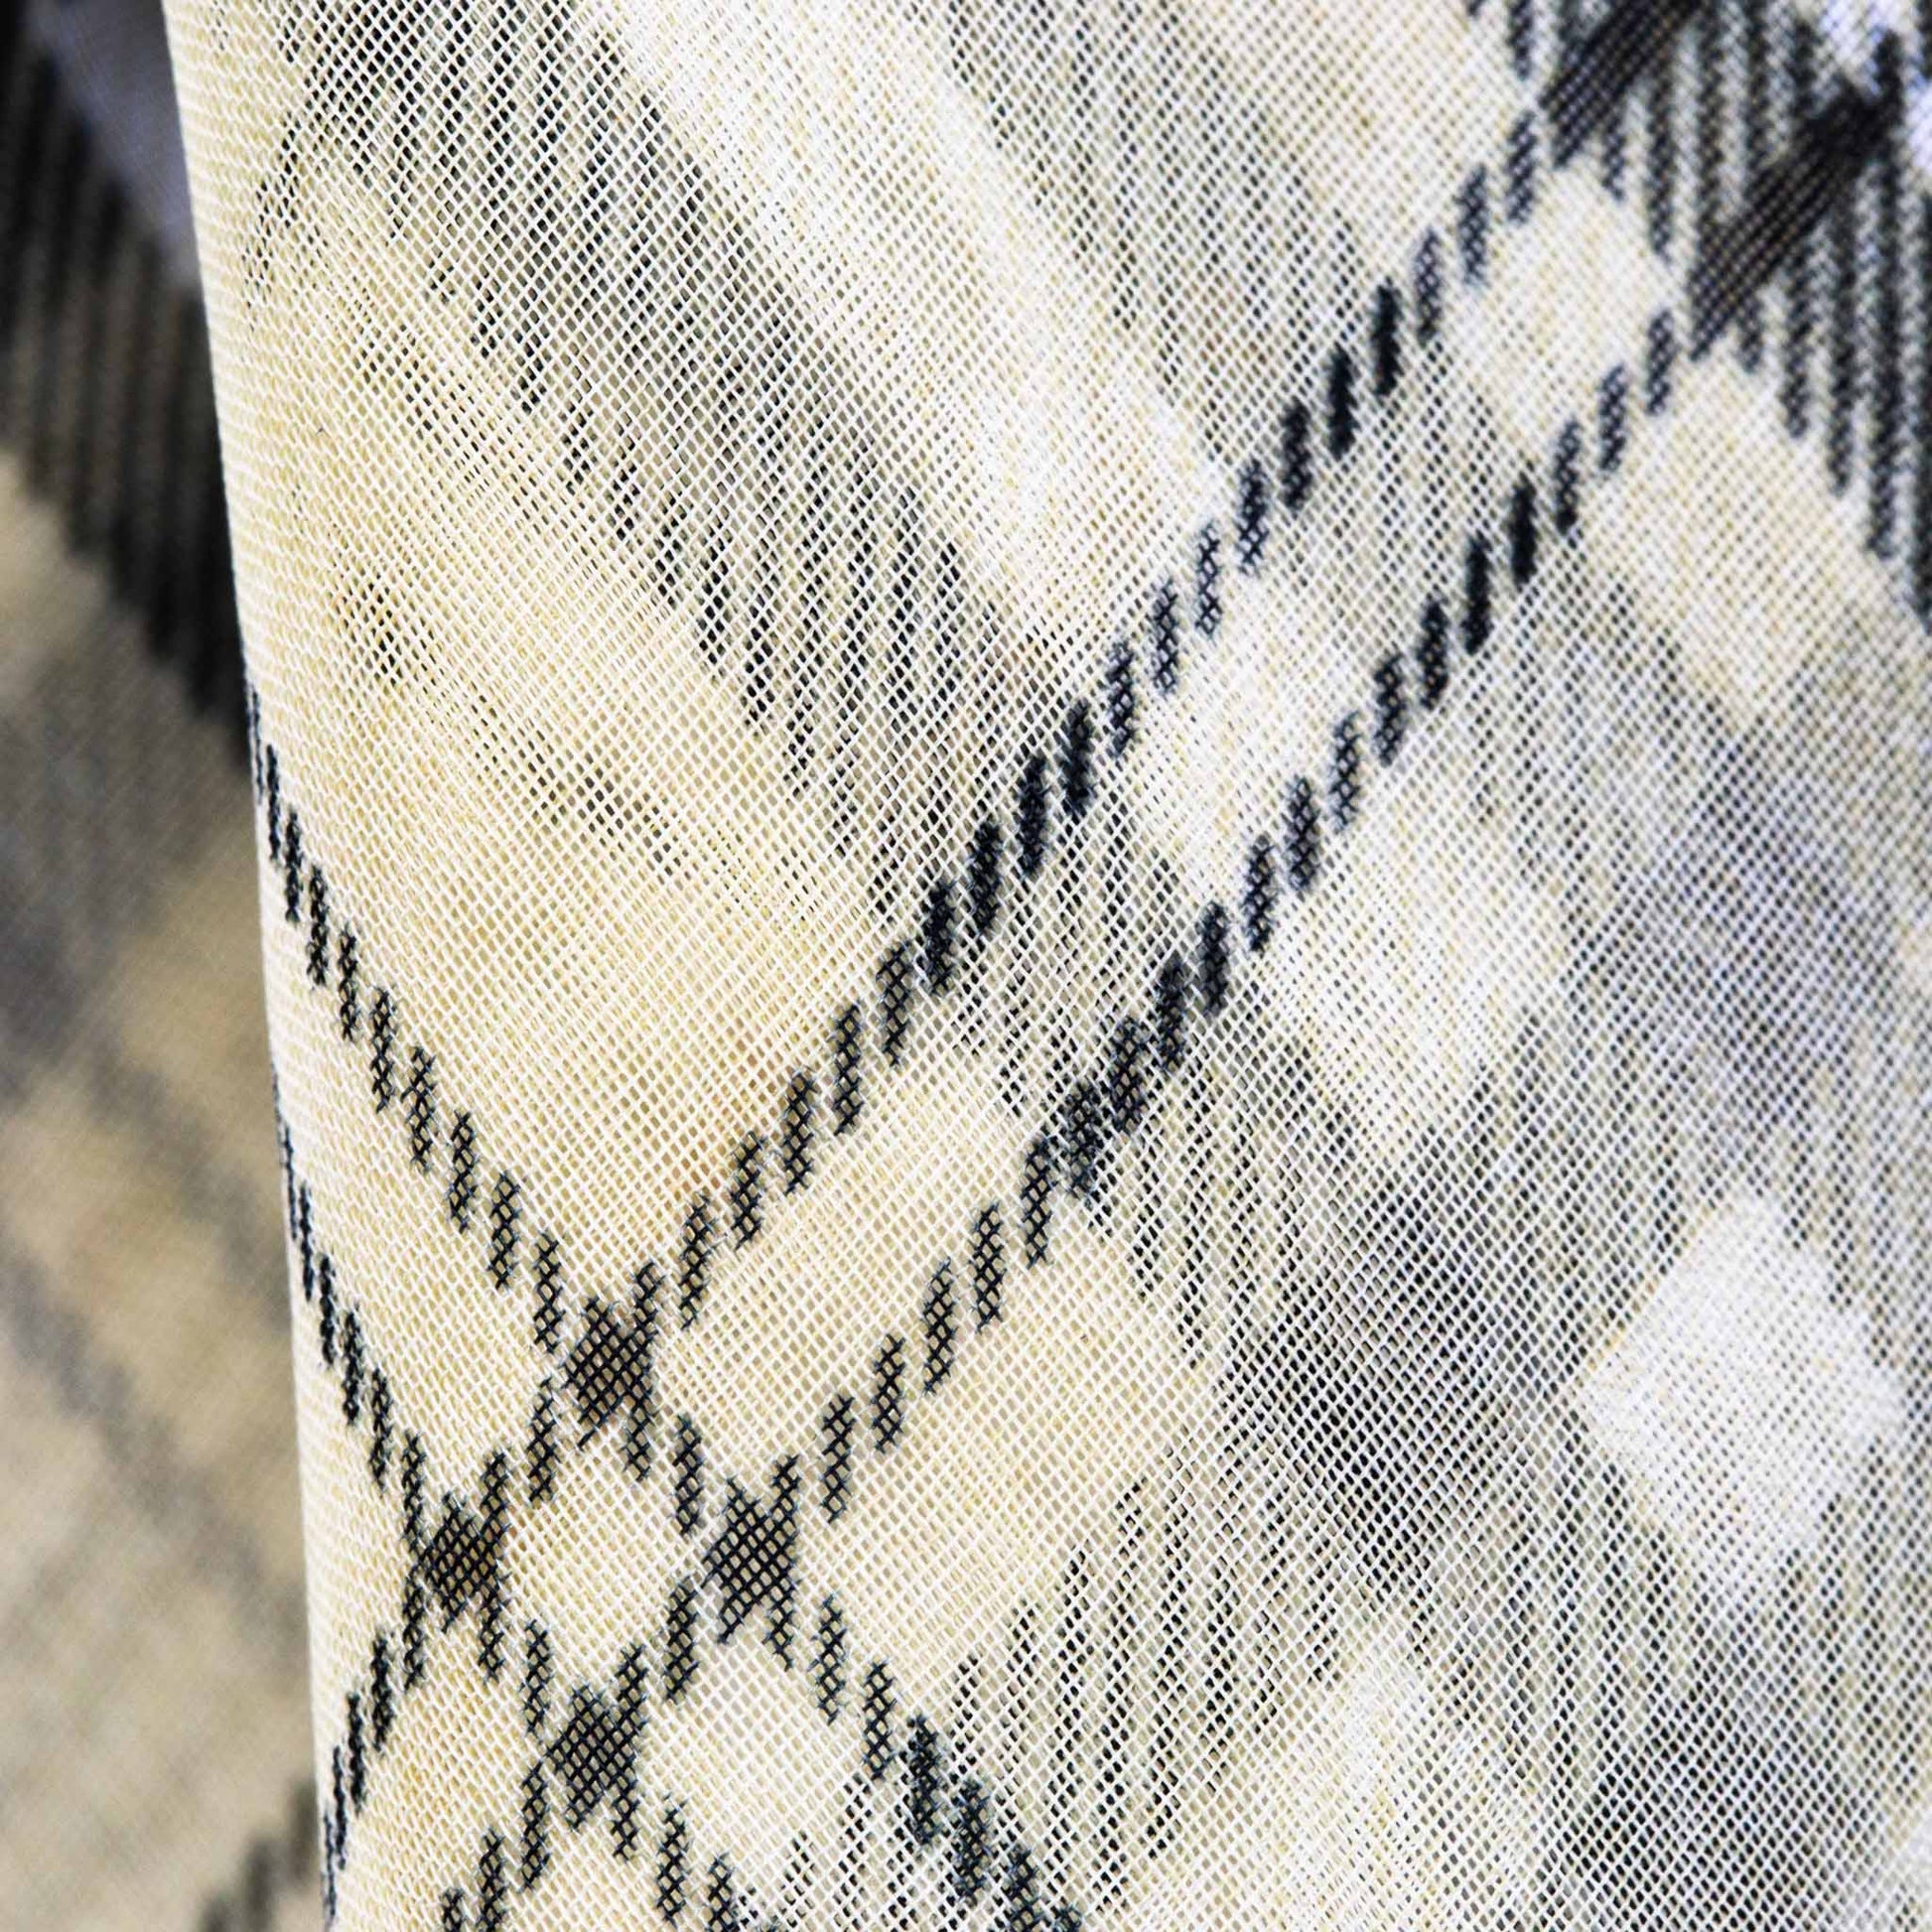 Eșarfă damă din mătase cu imprimeu în carouri, 65 x 60 cm - Galben